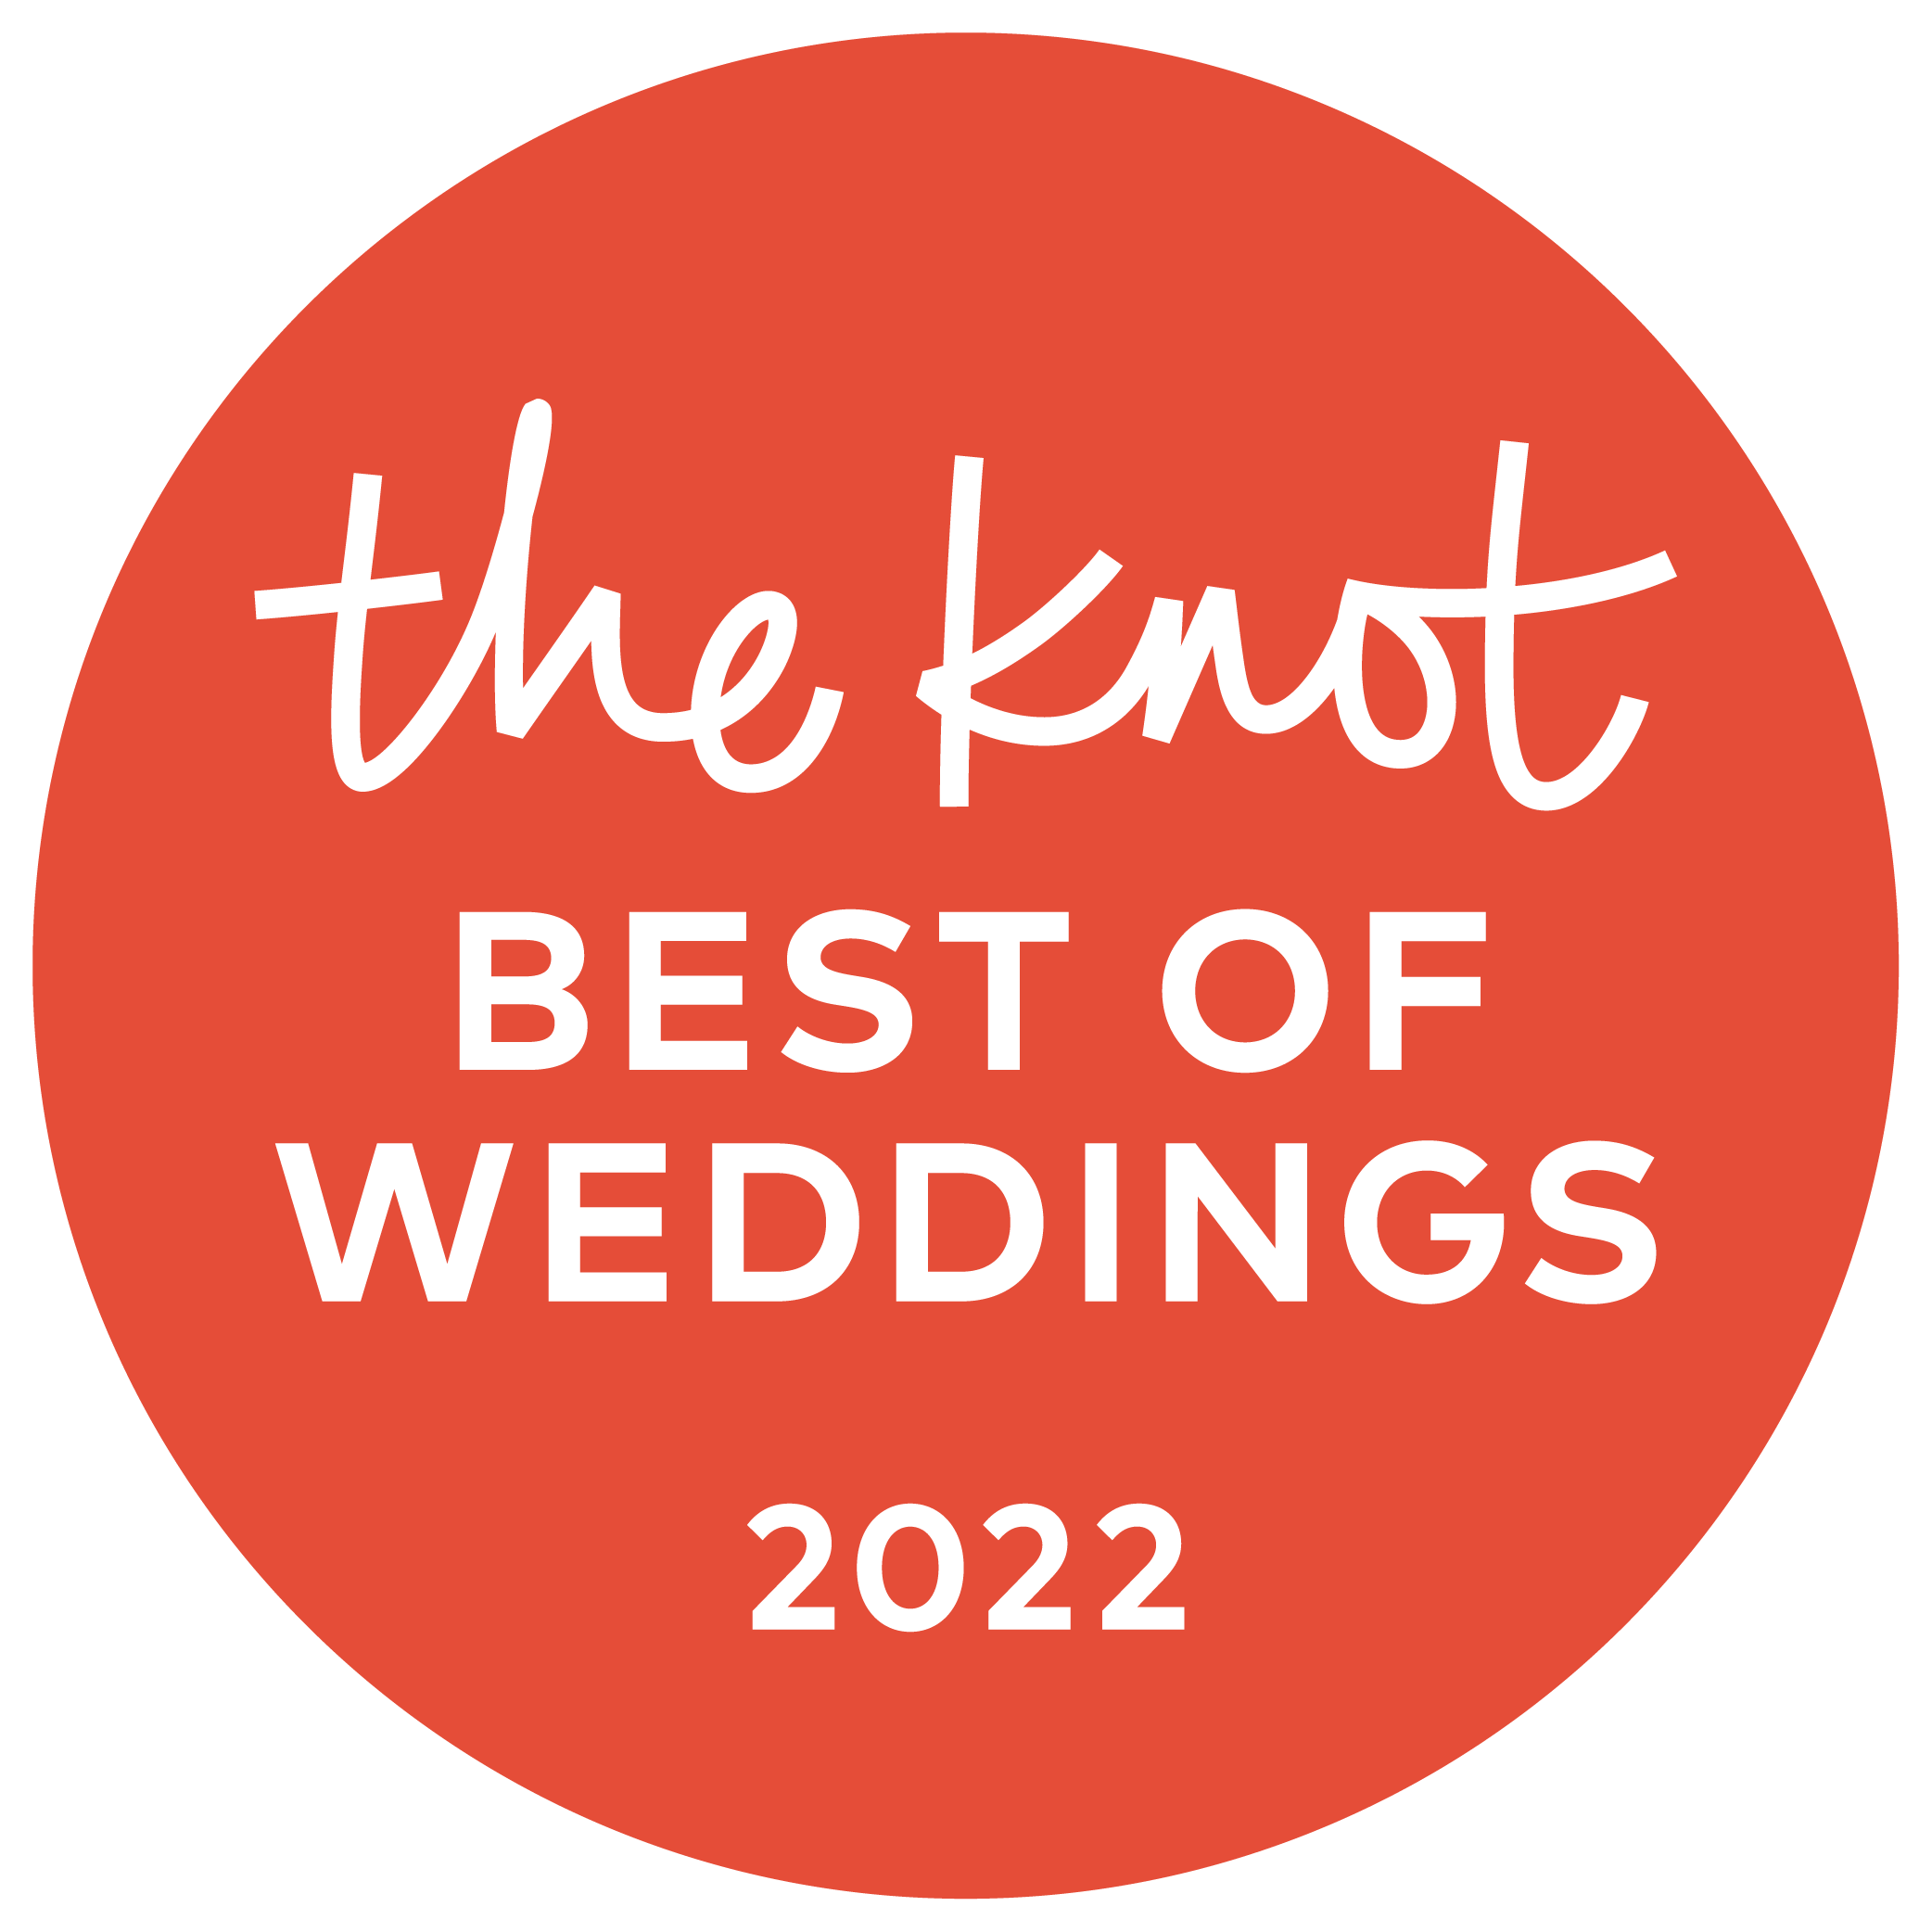 Best of Weddings 2022